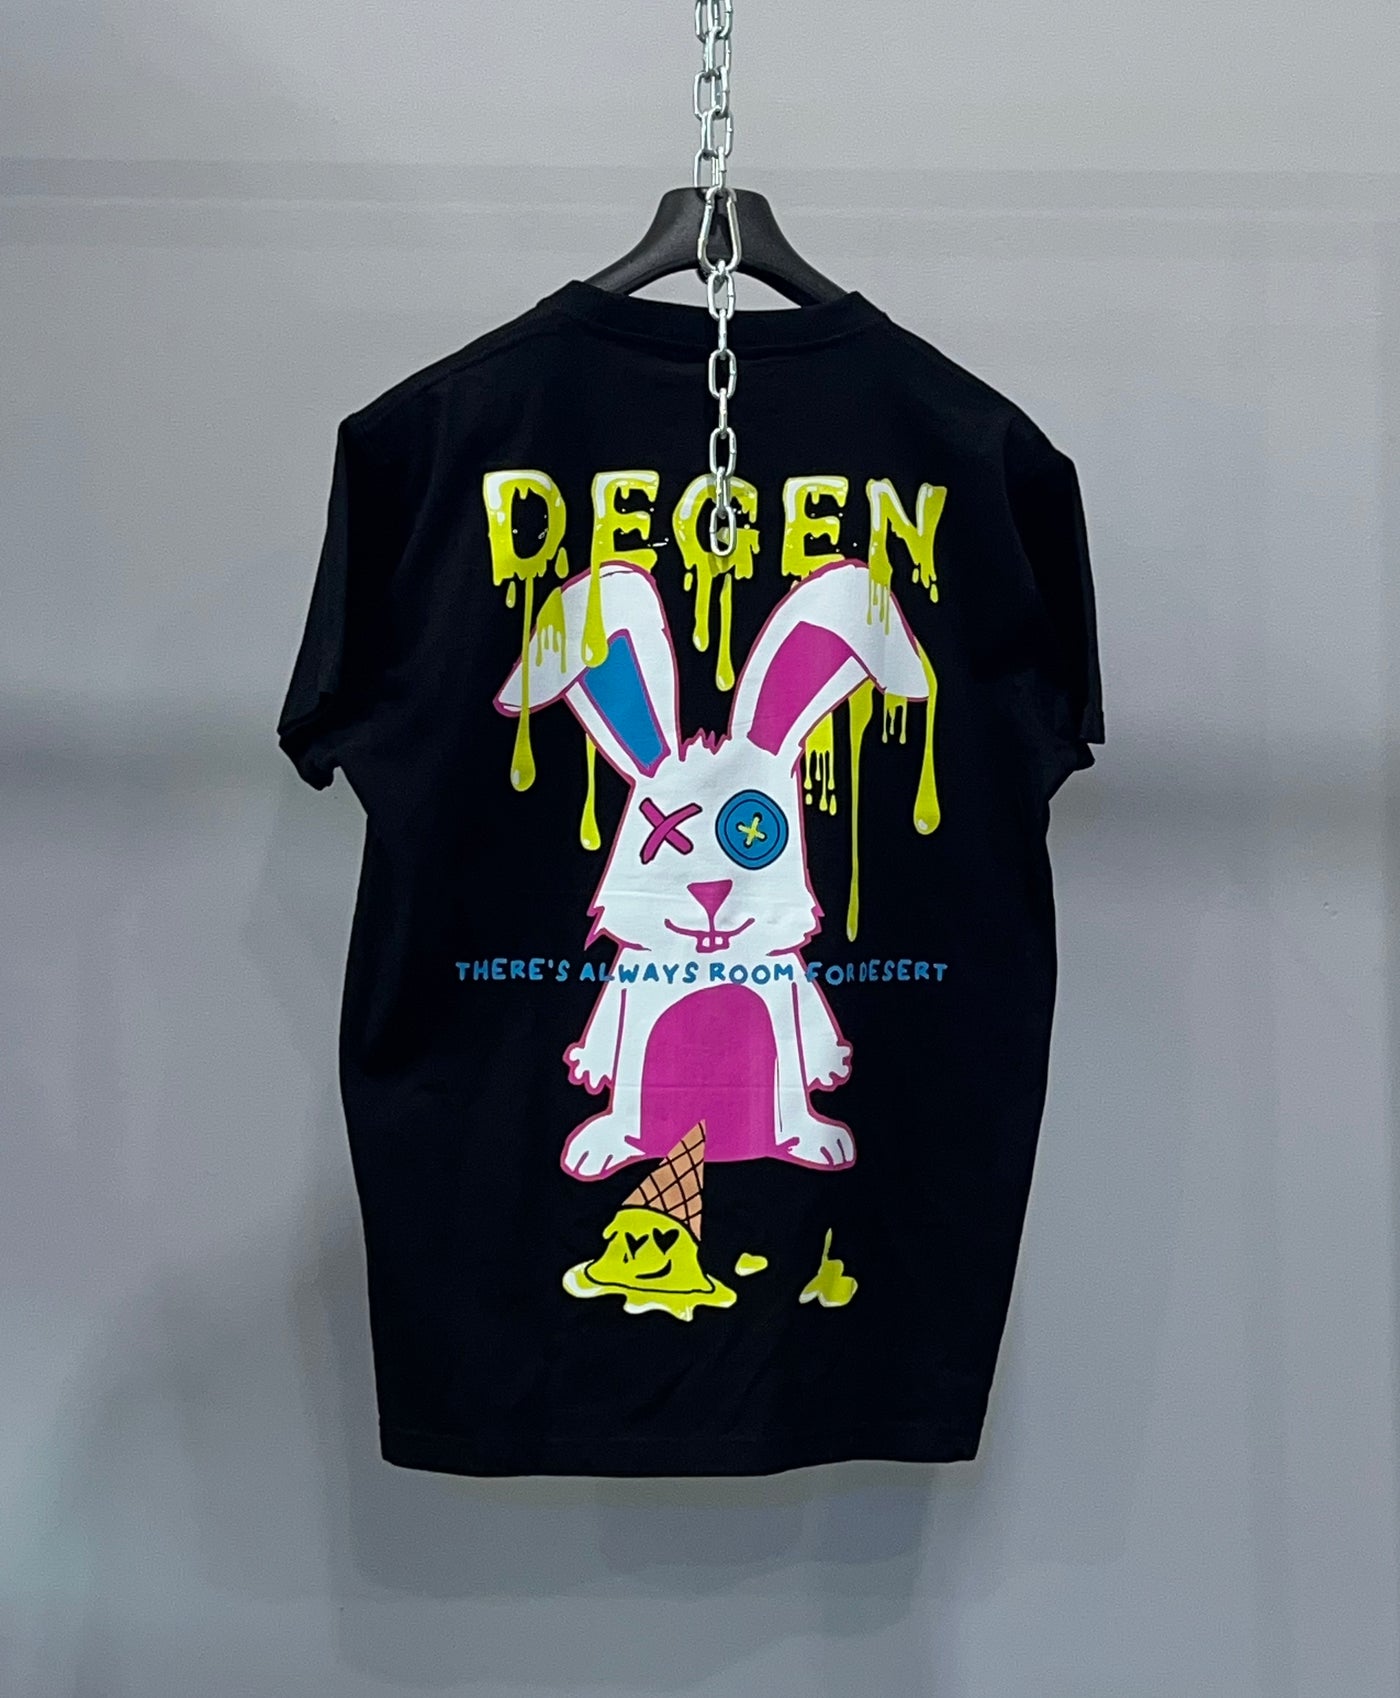 DGN004B DEGEN Bad Bunny Graphic T-Shirt